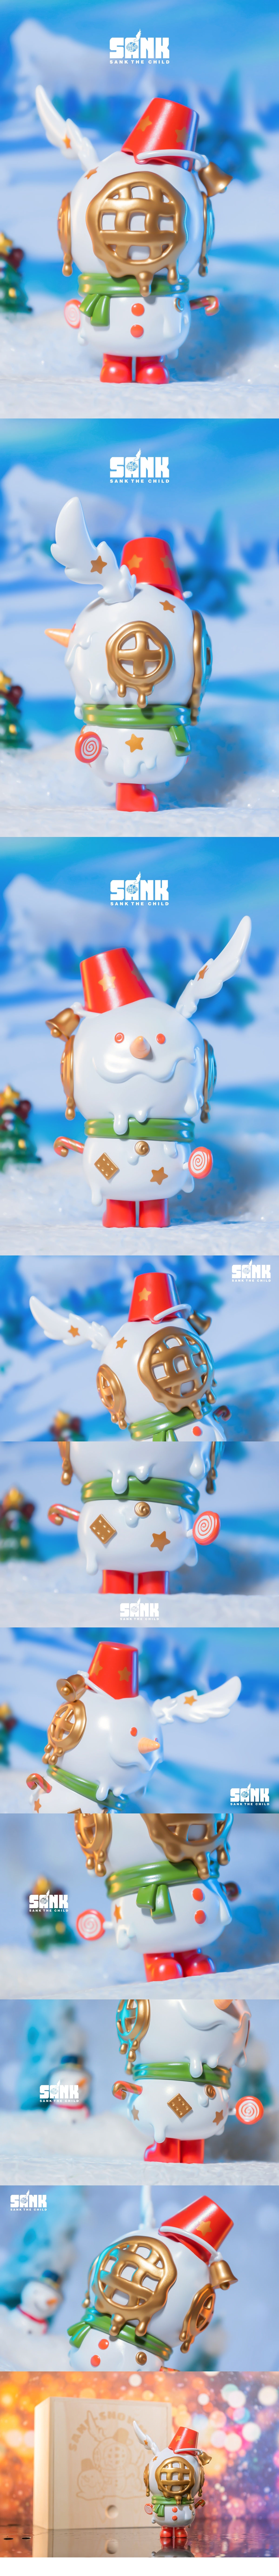 Sank-Snowman-White